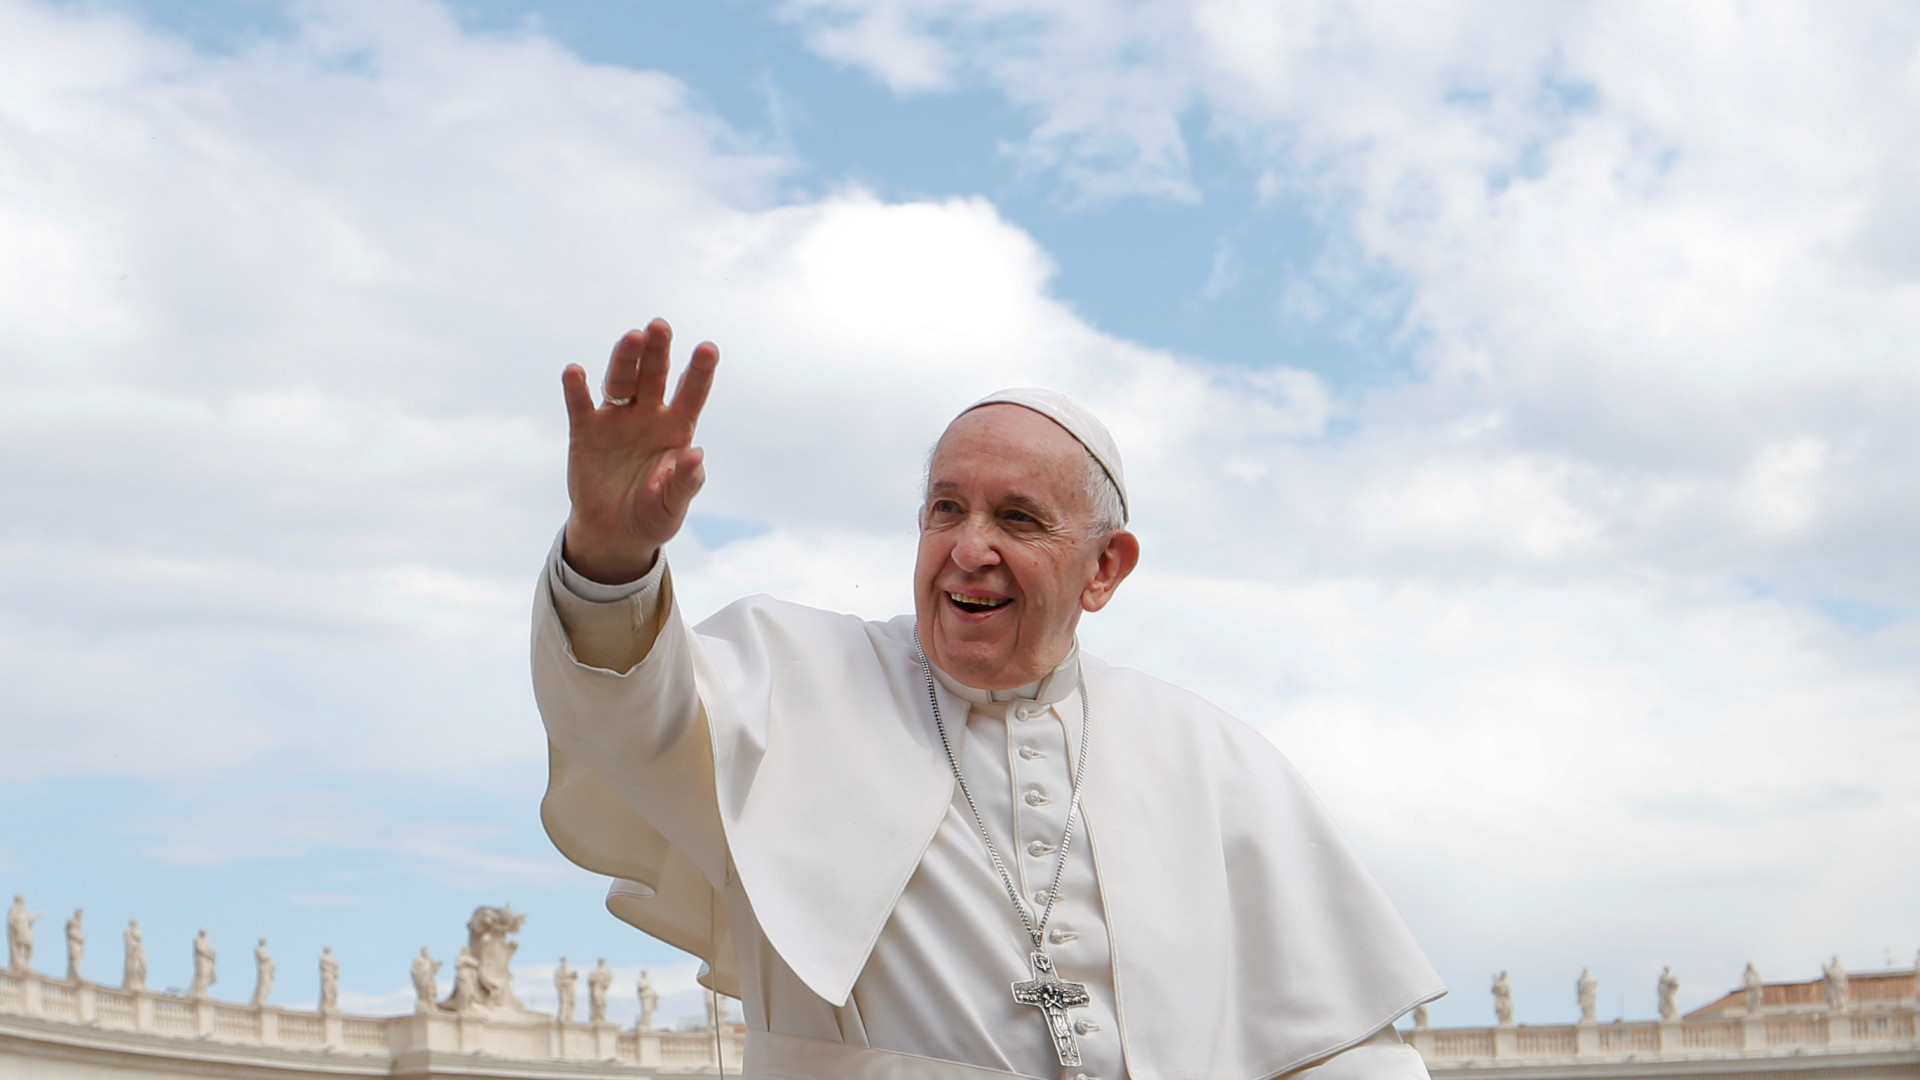 Papa Francisco visitará o Iraque em sua 1ª viagem desde o começo da pandemia